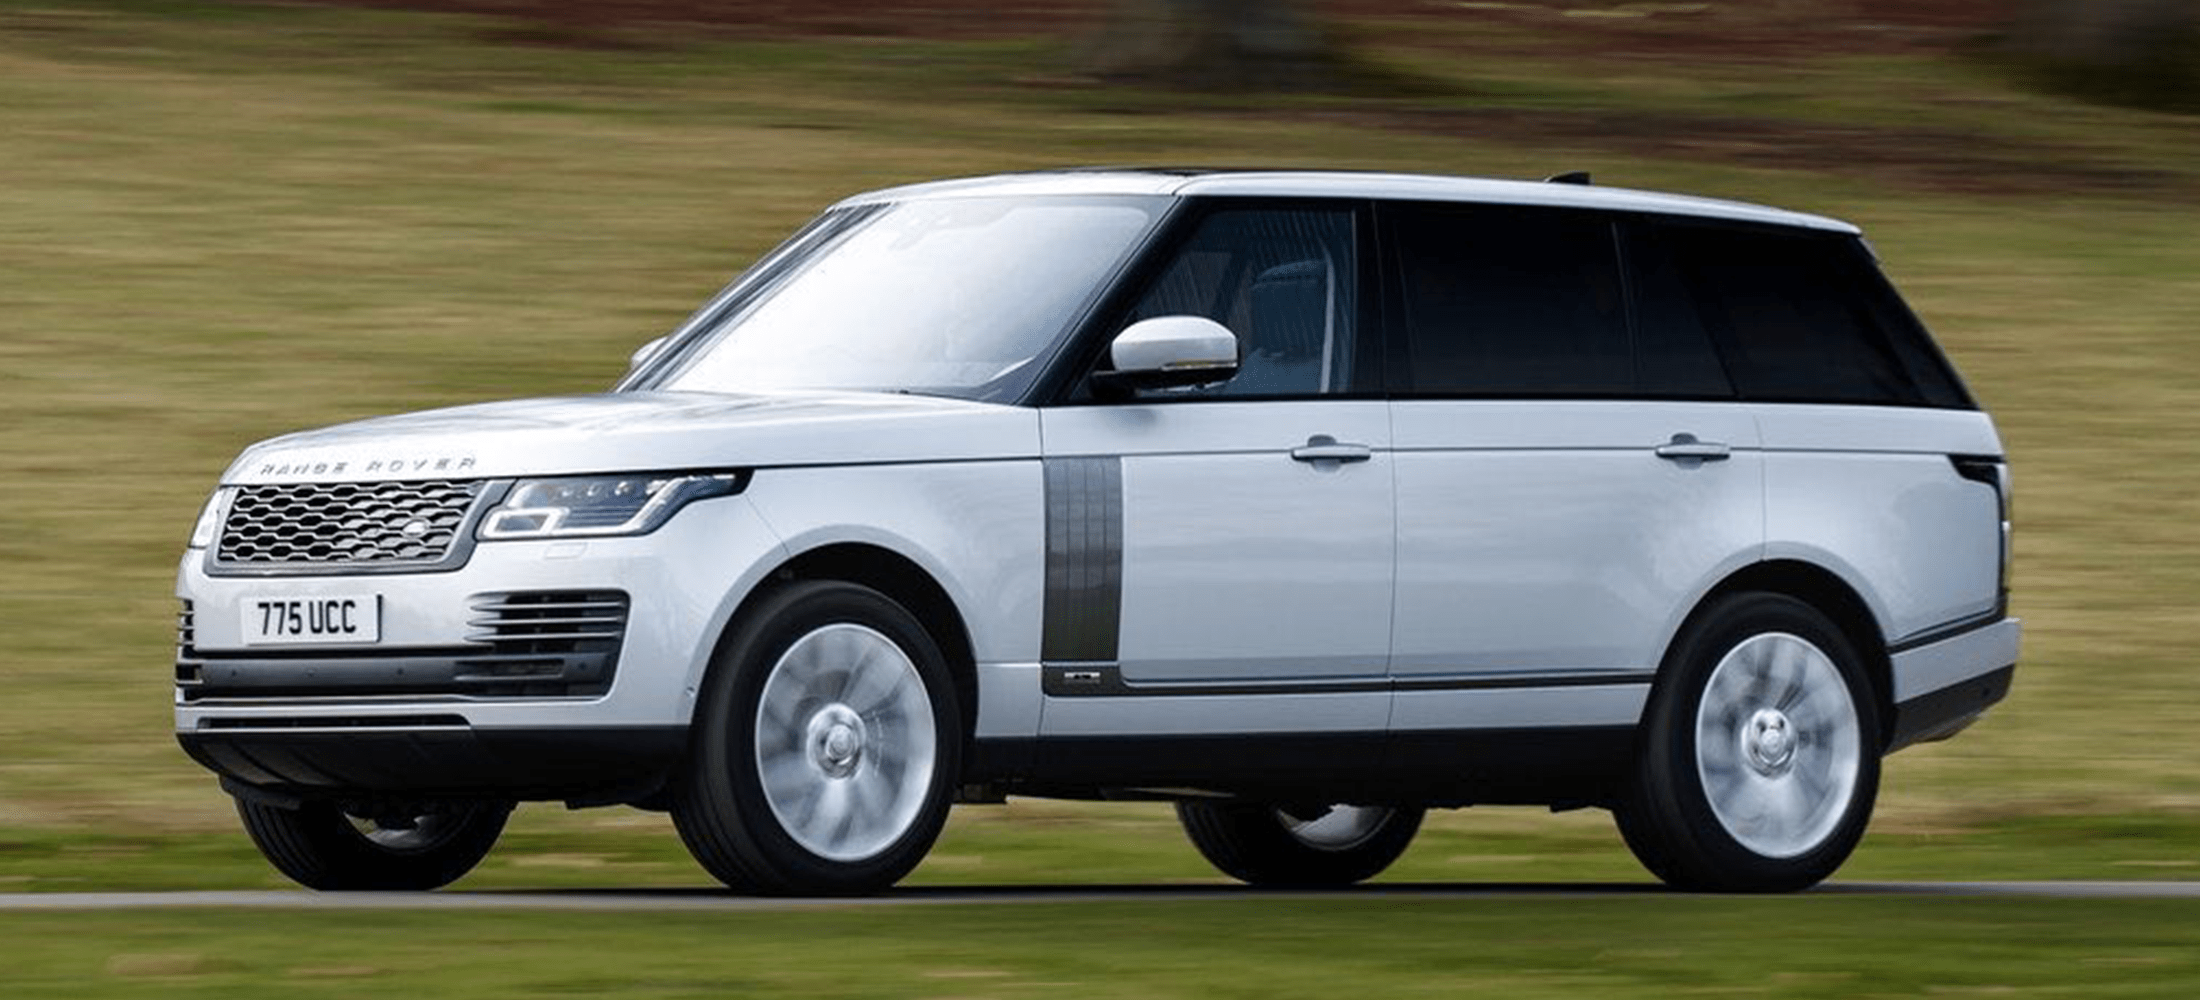 Range Rover 2019